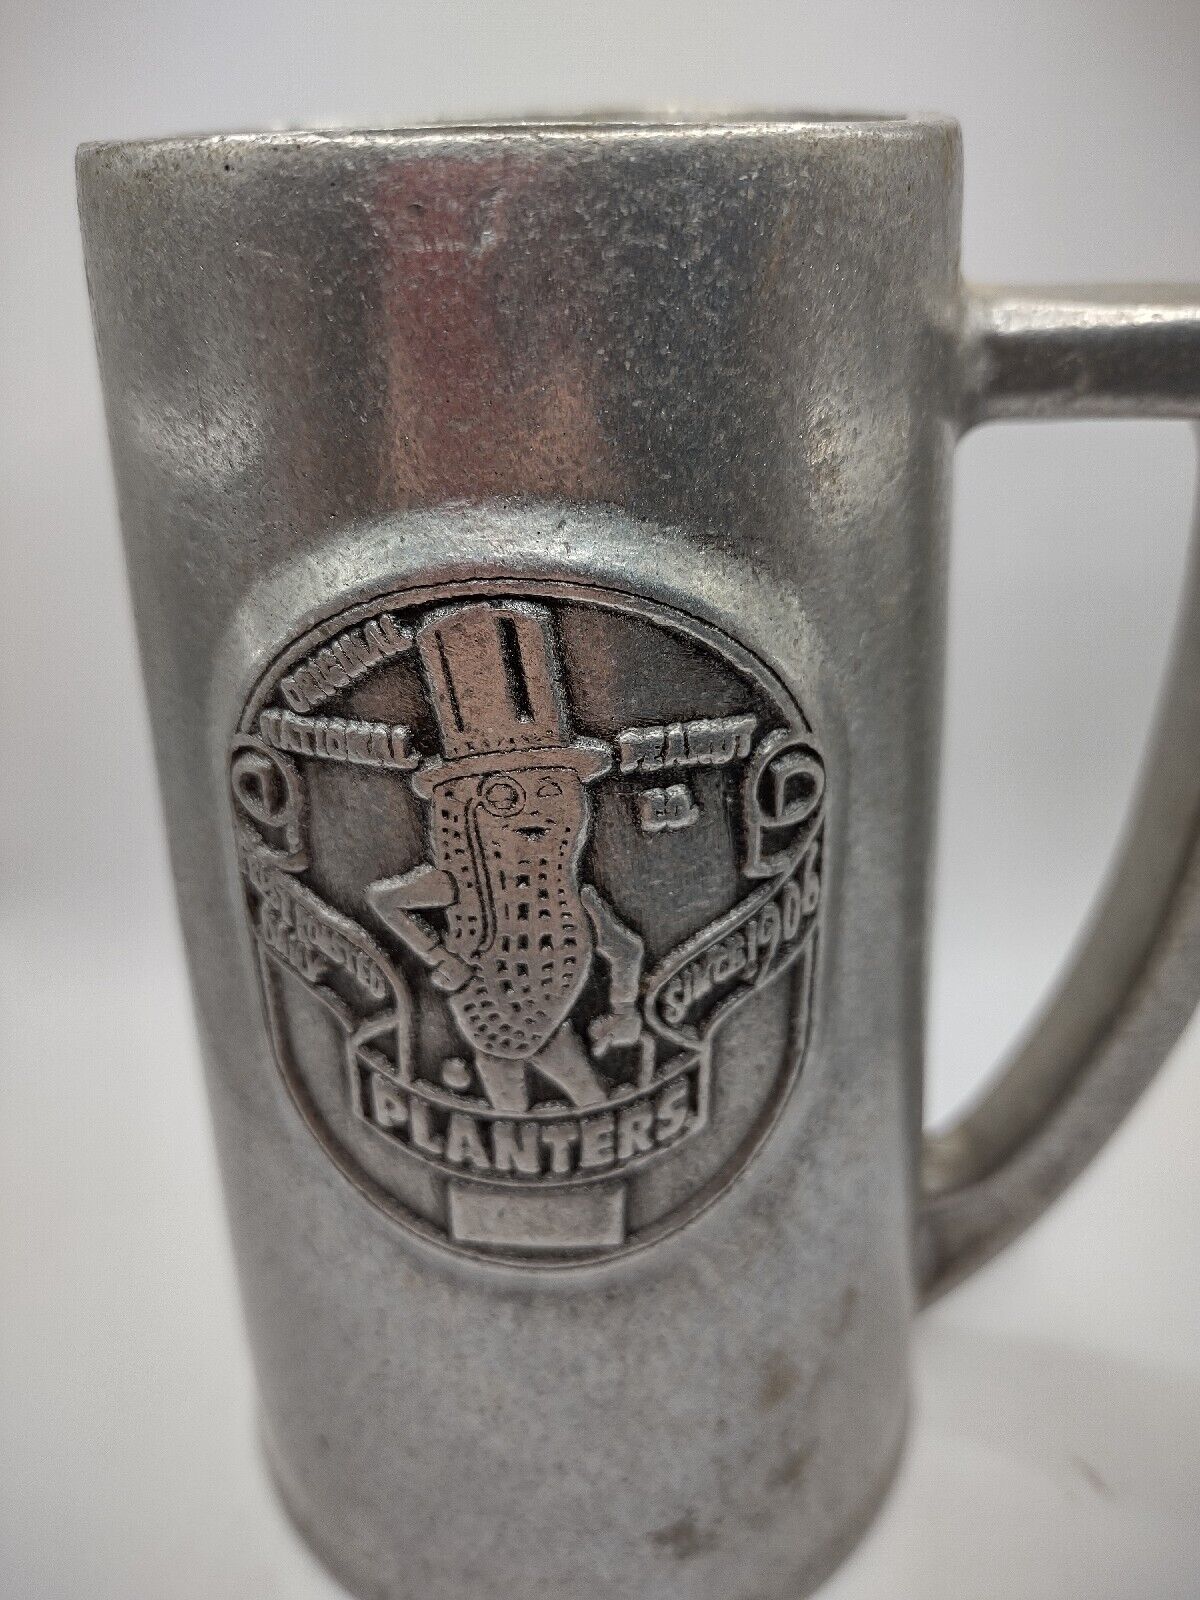 Vintage Wilton Armetale Planters Mr. Peanut Pewter Beer Stein Mug Since 1906